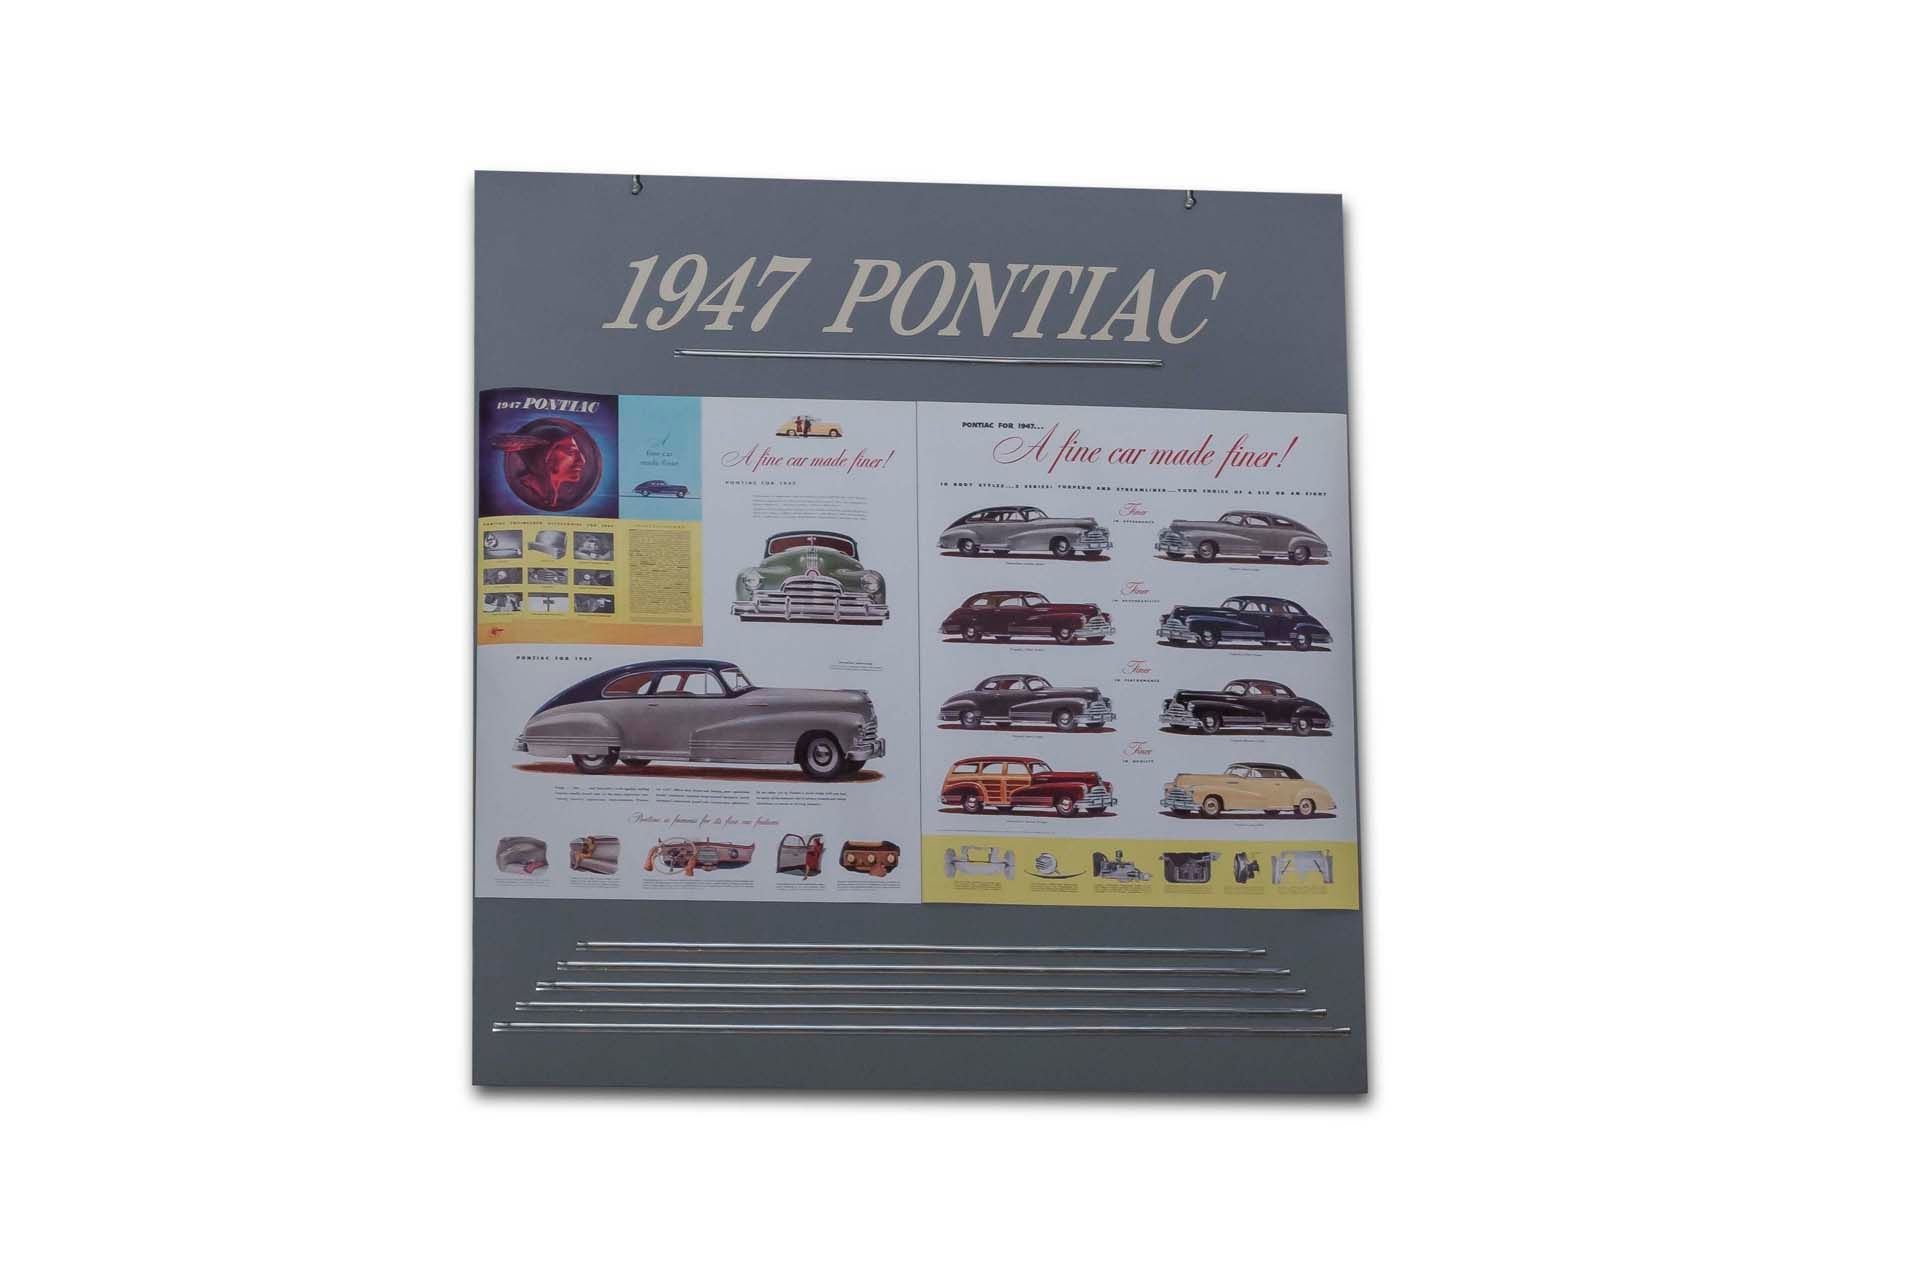 For Sale '1947 Pontiac Model Line Display Hanging Sign